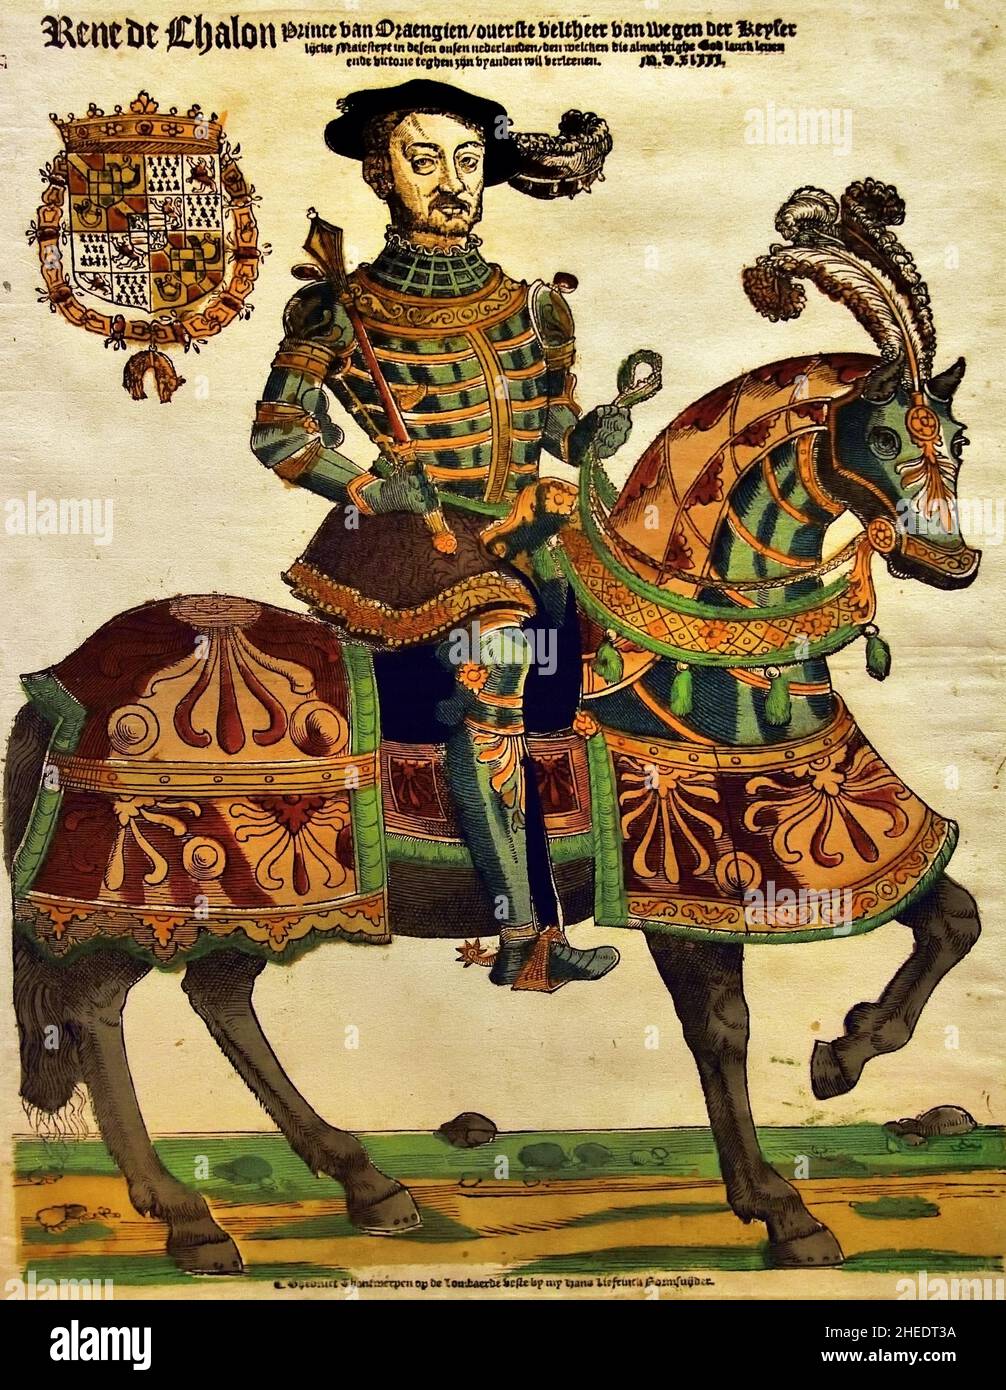 René de Chalon (1519-1544), Prinz von Oranien, in Rüstung zu Pferd, Stab in der Hand. 1543 ,Holzschnitt / Handfarbendruckerei, Cornelis Anthonisz. Verleger Hans Liefrinck, Antwerpen , Belgier, Belgien, Flämisch, Die Niederlande, ( René de Chalon , gekleidet in blaugrüne Rüstung mit orangefarbenen Streifen und violettem Mantel. Sein Pferd hat eine Decke in zwei Rottönen mit grünen Fransen. Oben links sein Wappen mit dem Orden vom Goldenen Vlies. René de Chalon wurde 1540 Stadthalter von Holland, Zeeland und Friesland. ) Stockfoto